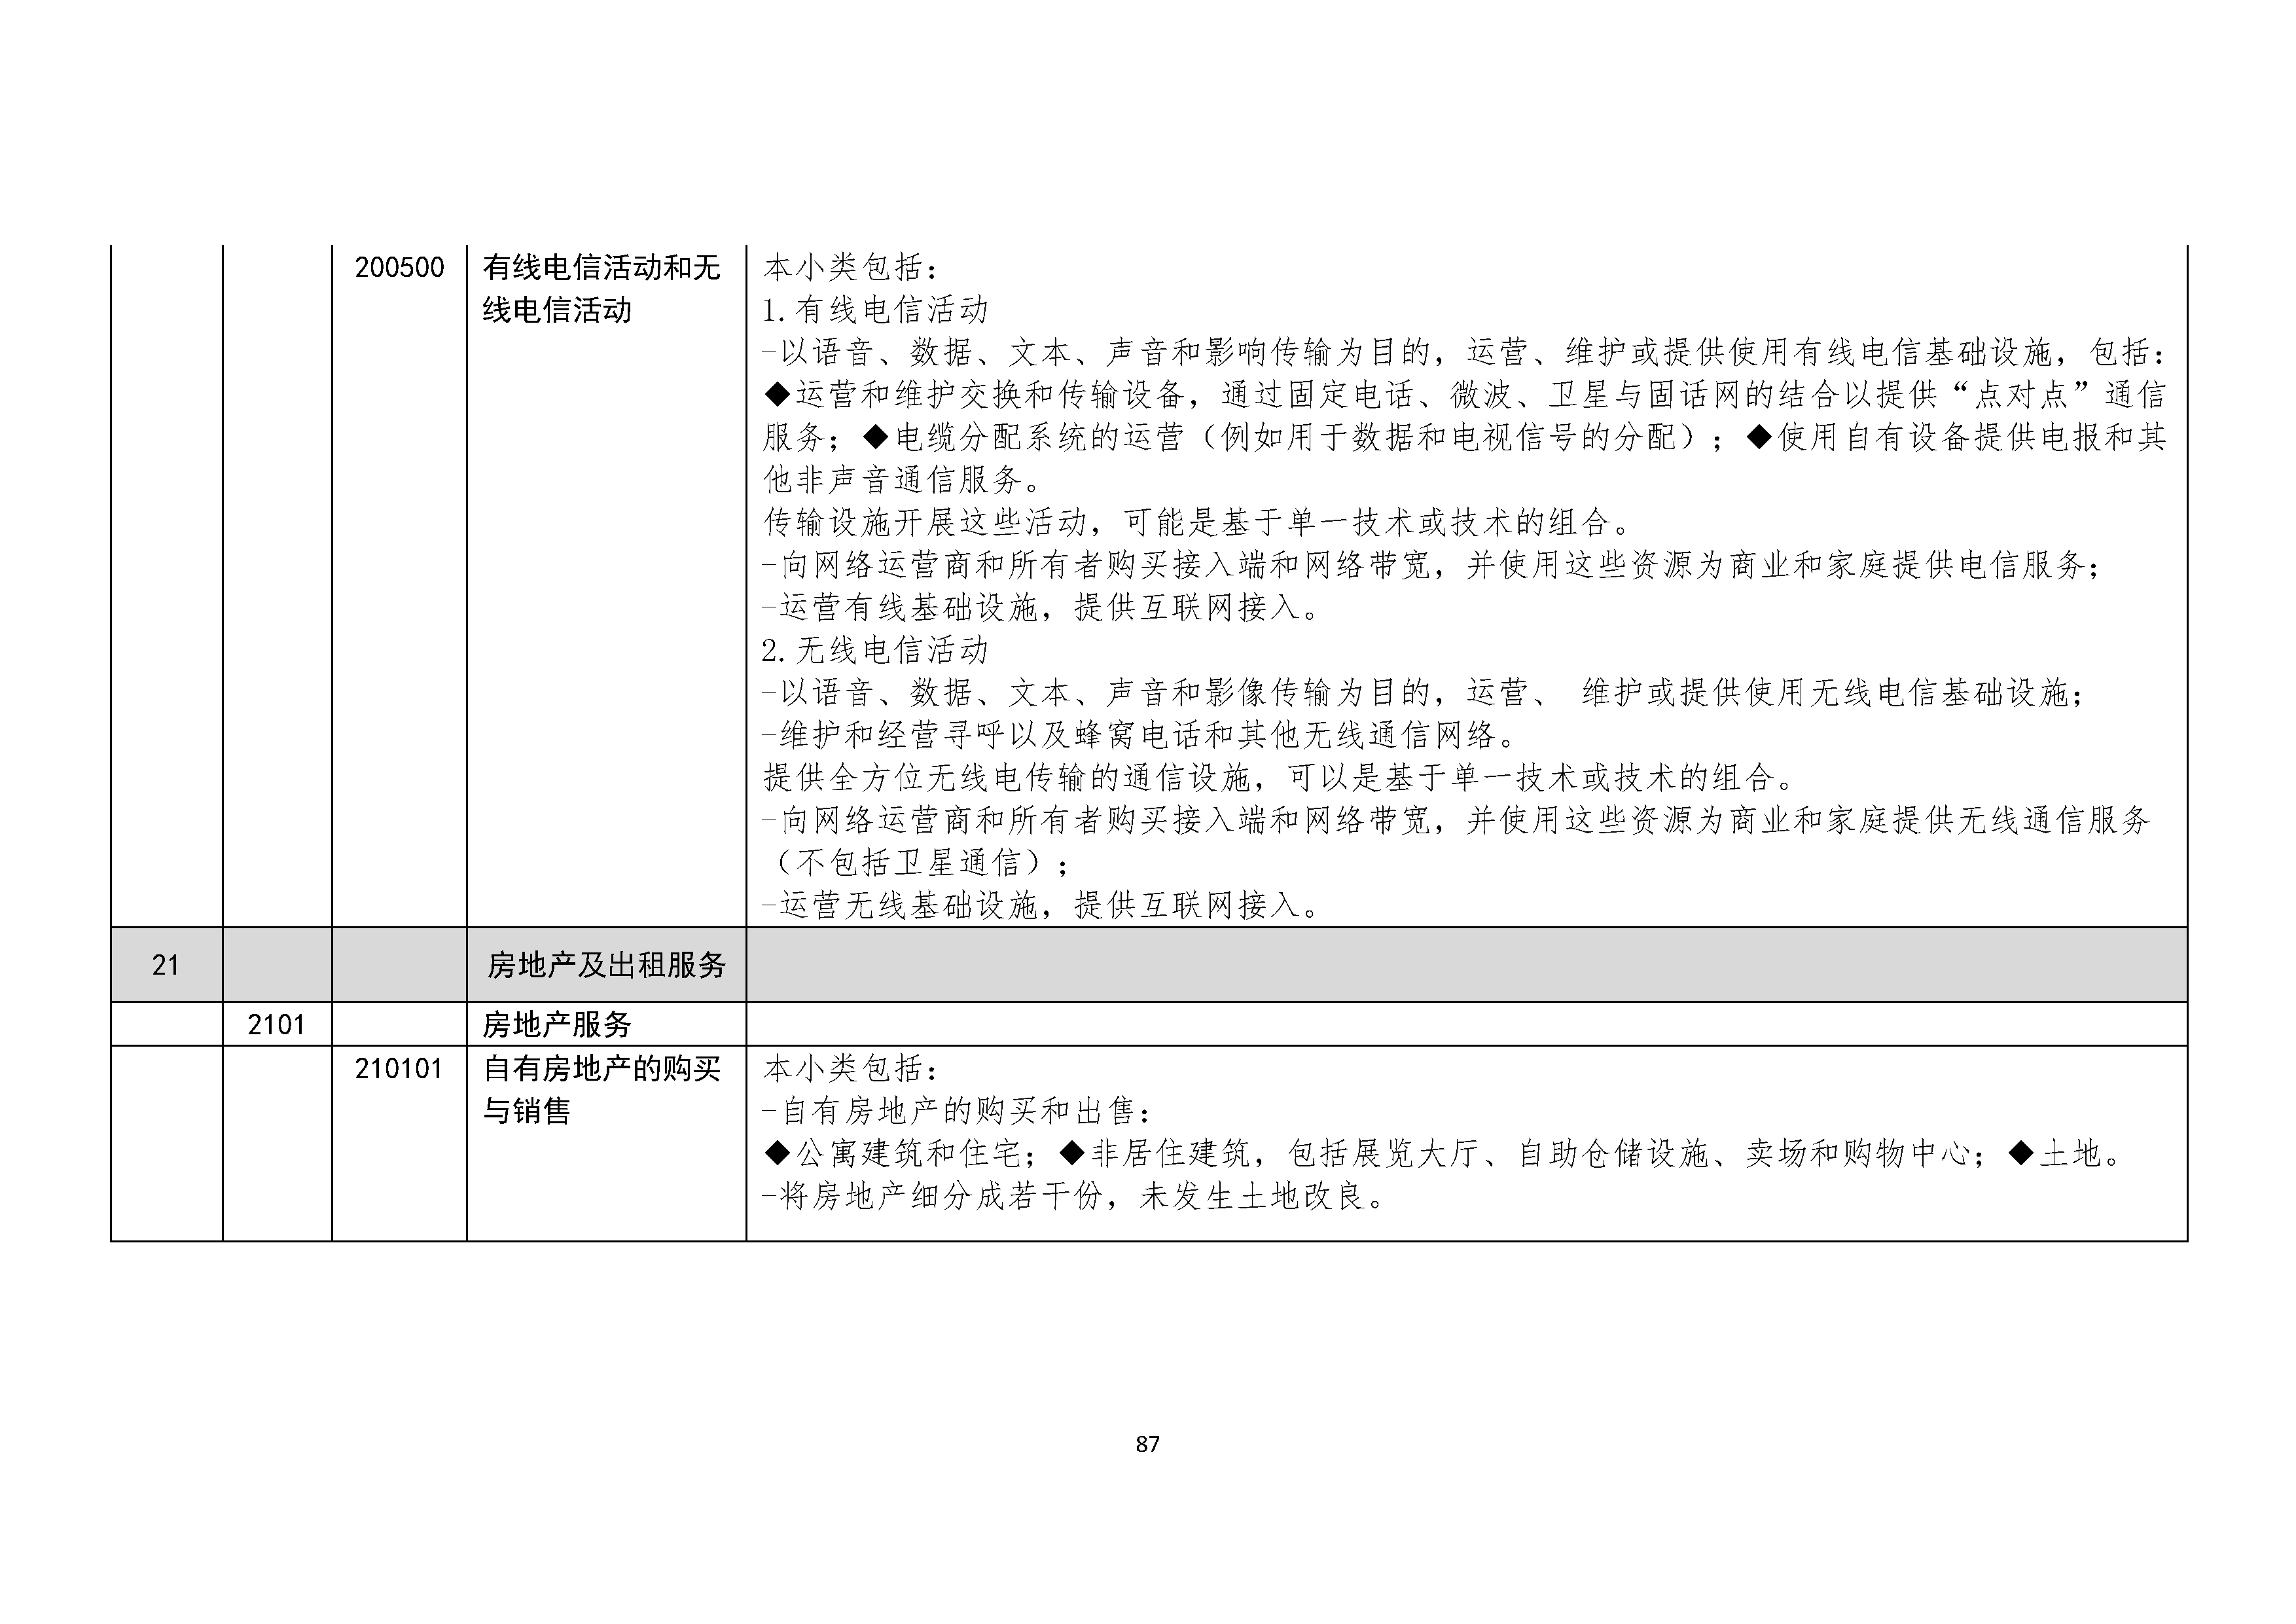 B.6《中国核能行业协会供应商评价供应商分类及产品专业范围划分规定》_页面_088.png